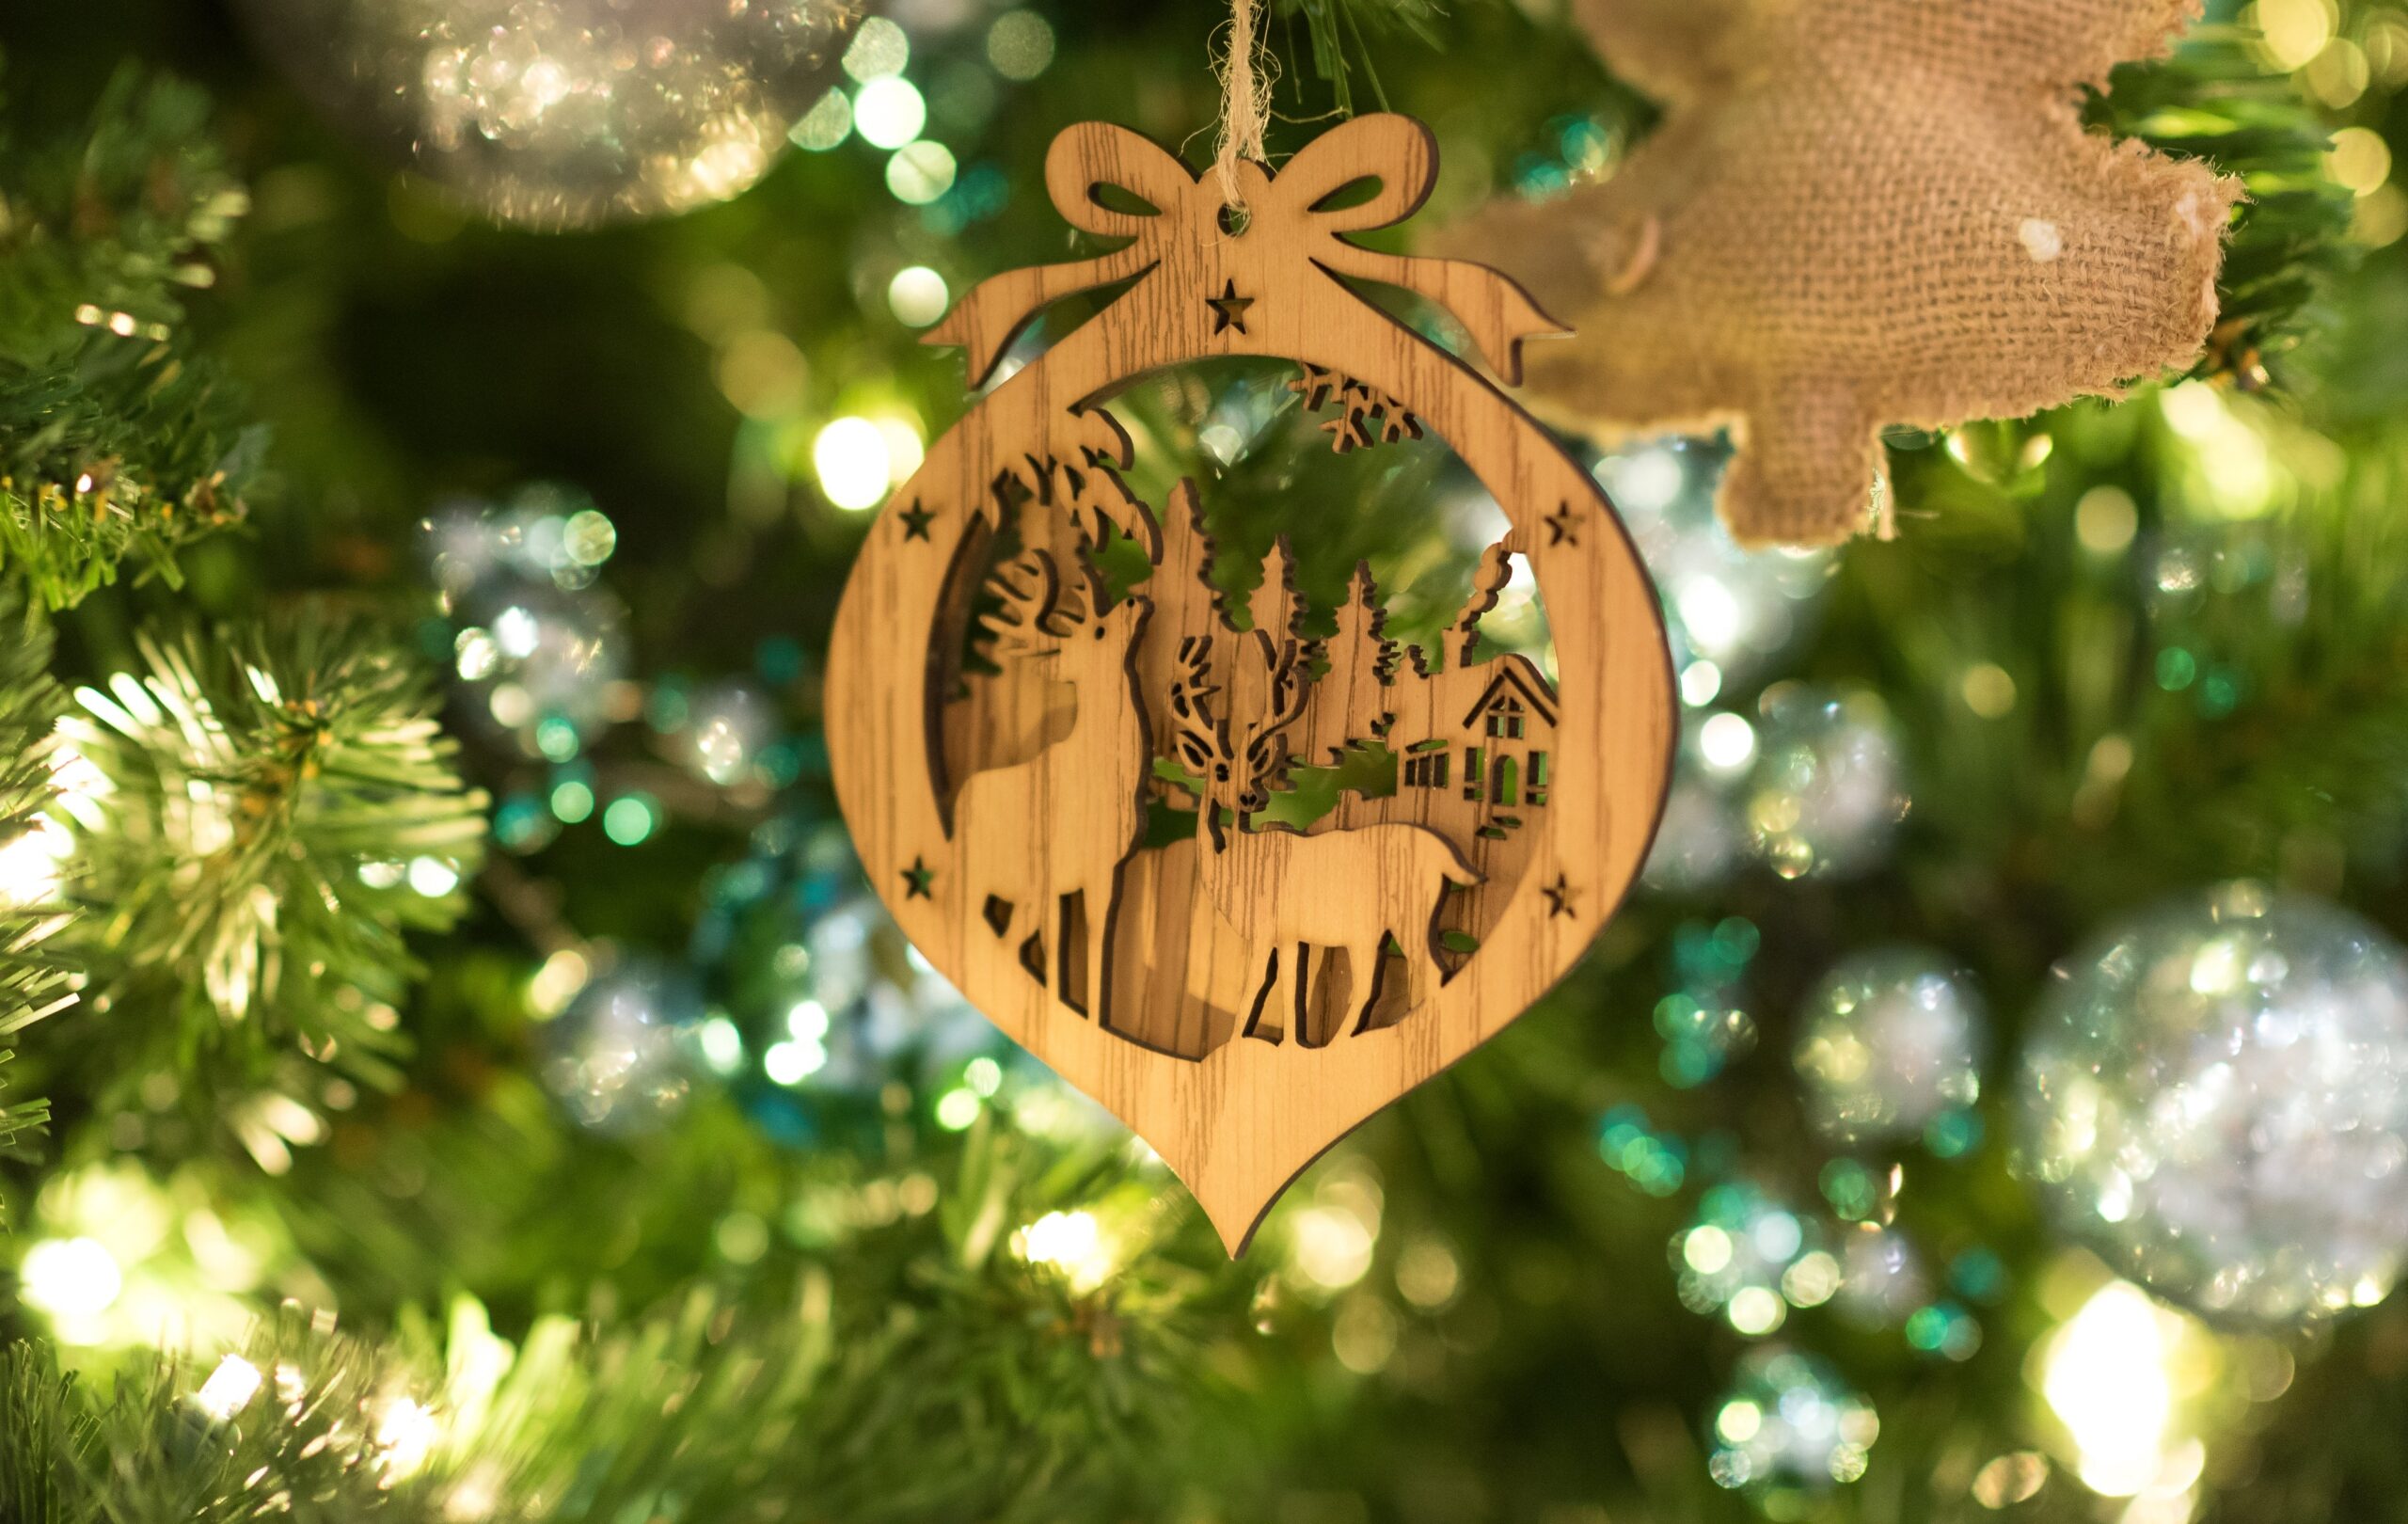 Decoração de Natal: Estilos, Ideias e Dicas para Você  Floral christmas  tree, Pink christmas tree decorations, Christmas tree roses